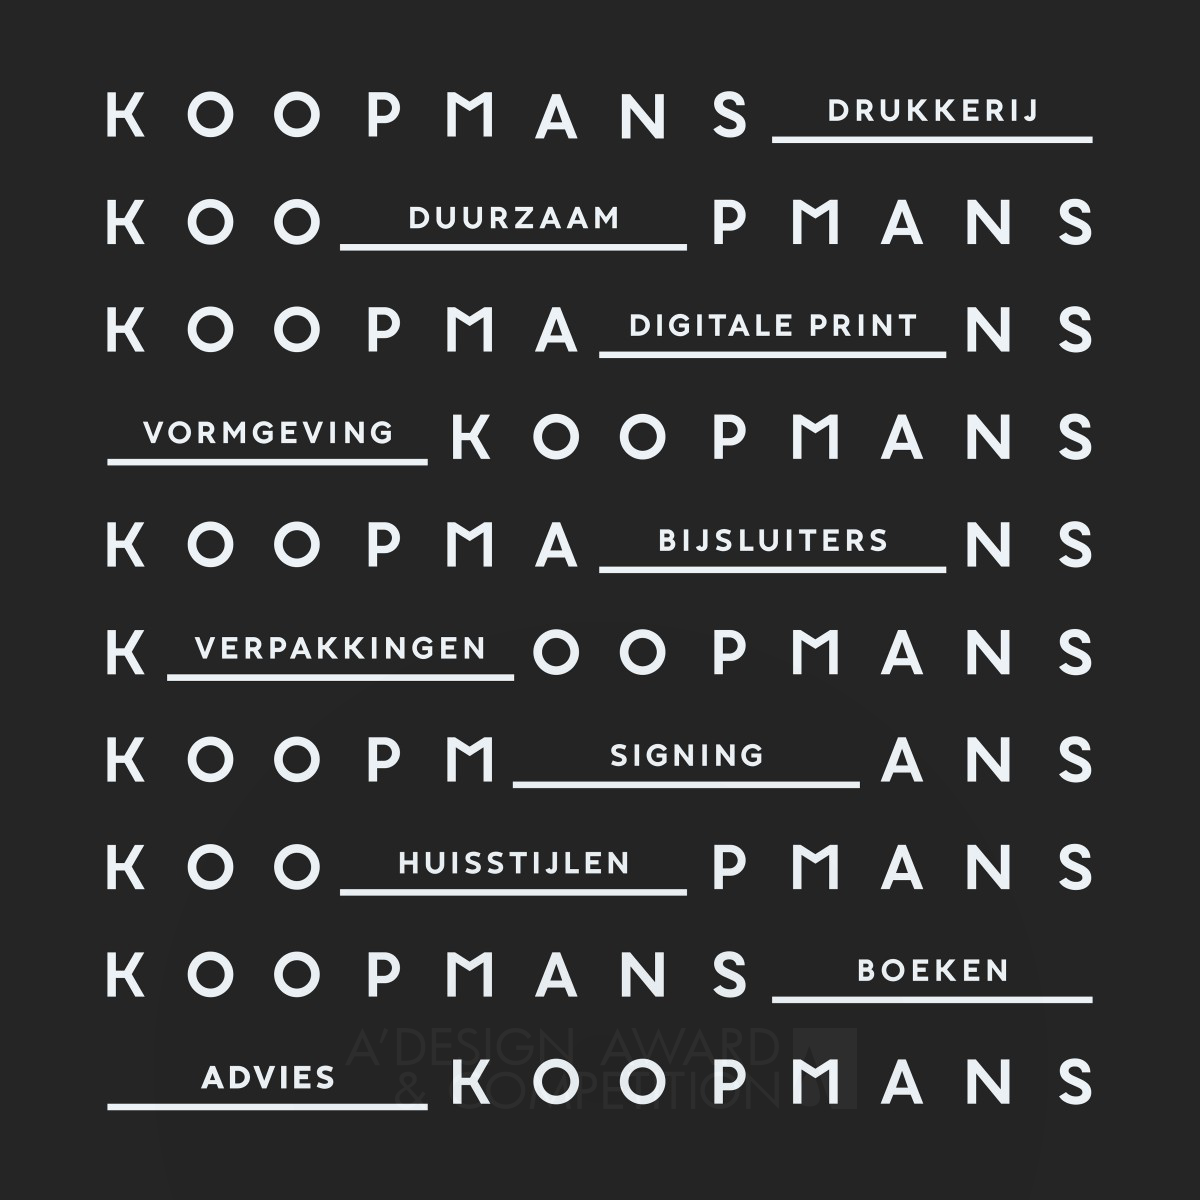 Animated Koopmans Logo by Ruud Winder